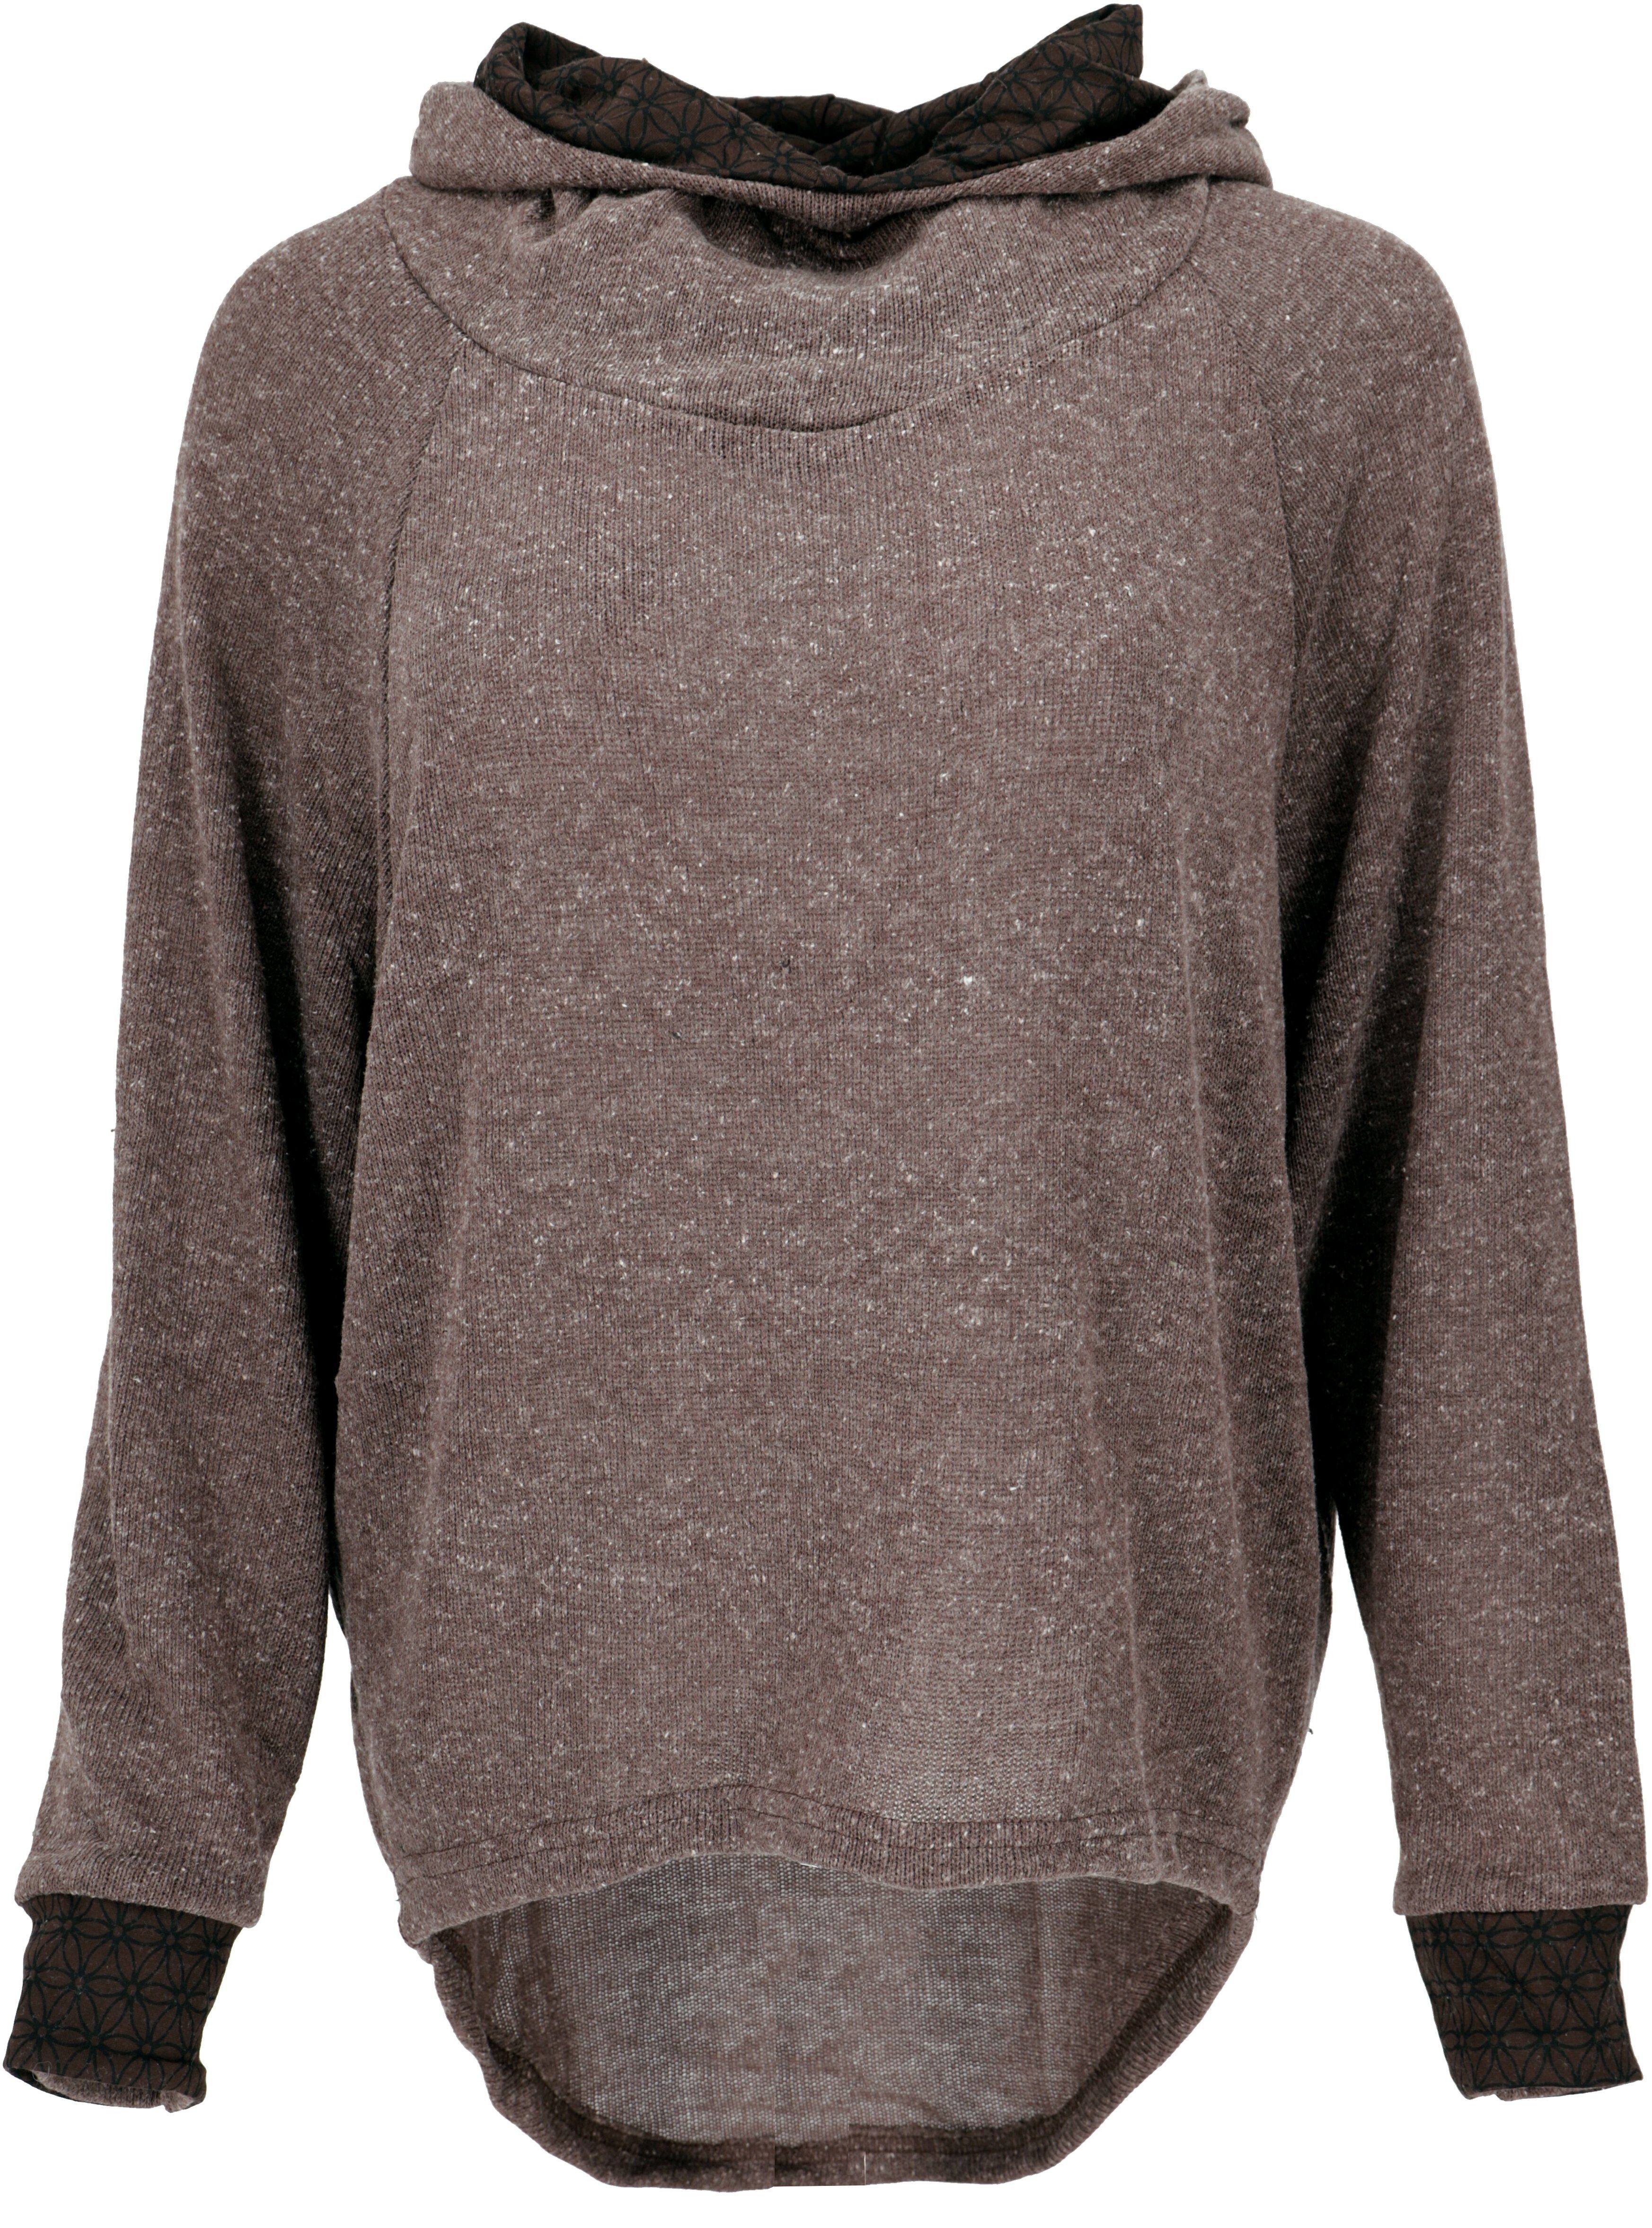 Guru-Shop Longsleeve Hoody, Sweatshirt, Pullover, Kapuzenpullover -.. alternative Bekleidung braun